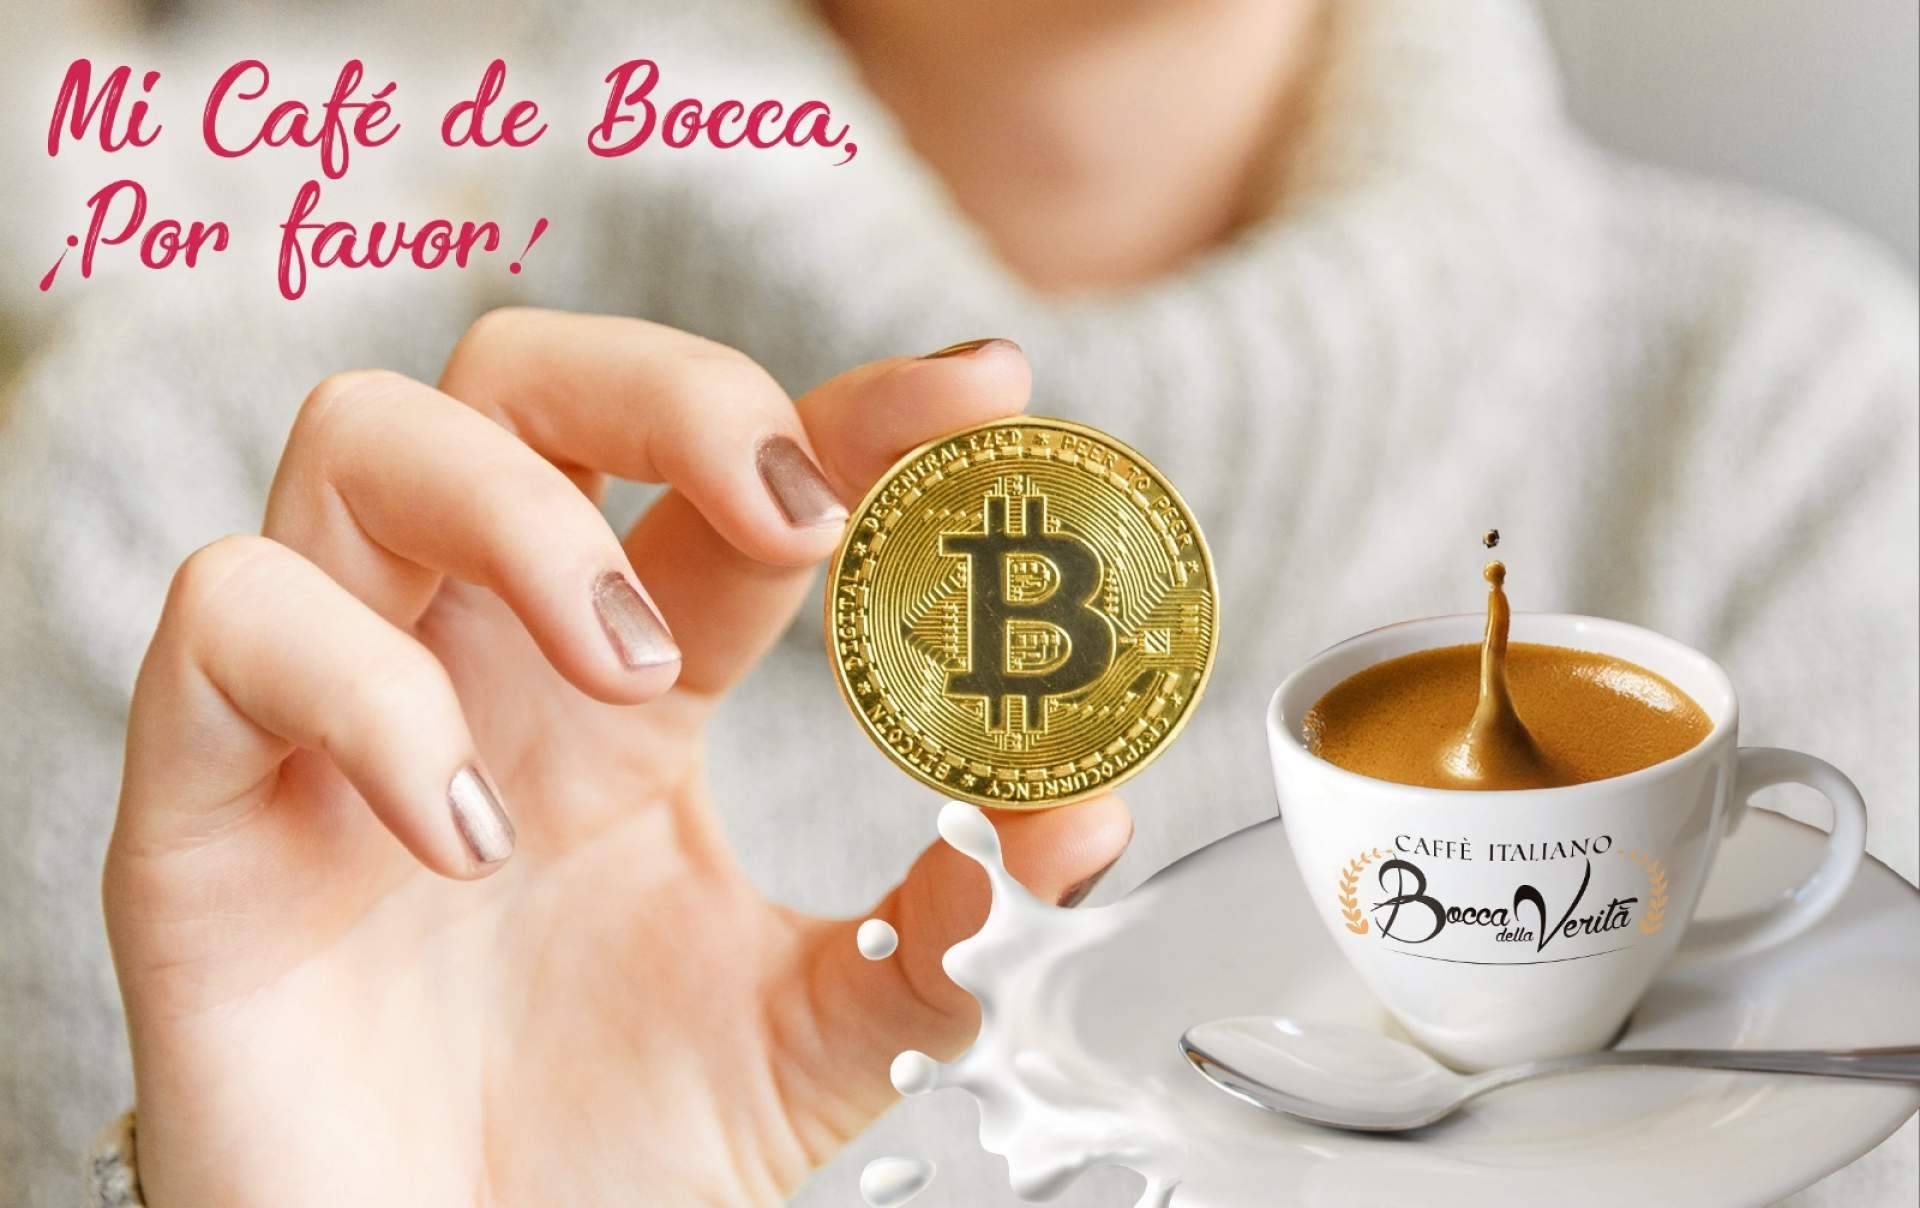 Las criptomonedas, incluyendo Bitcoin, también pueden comprar café italiano